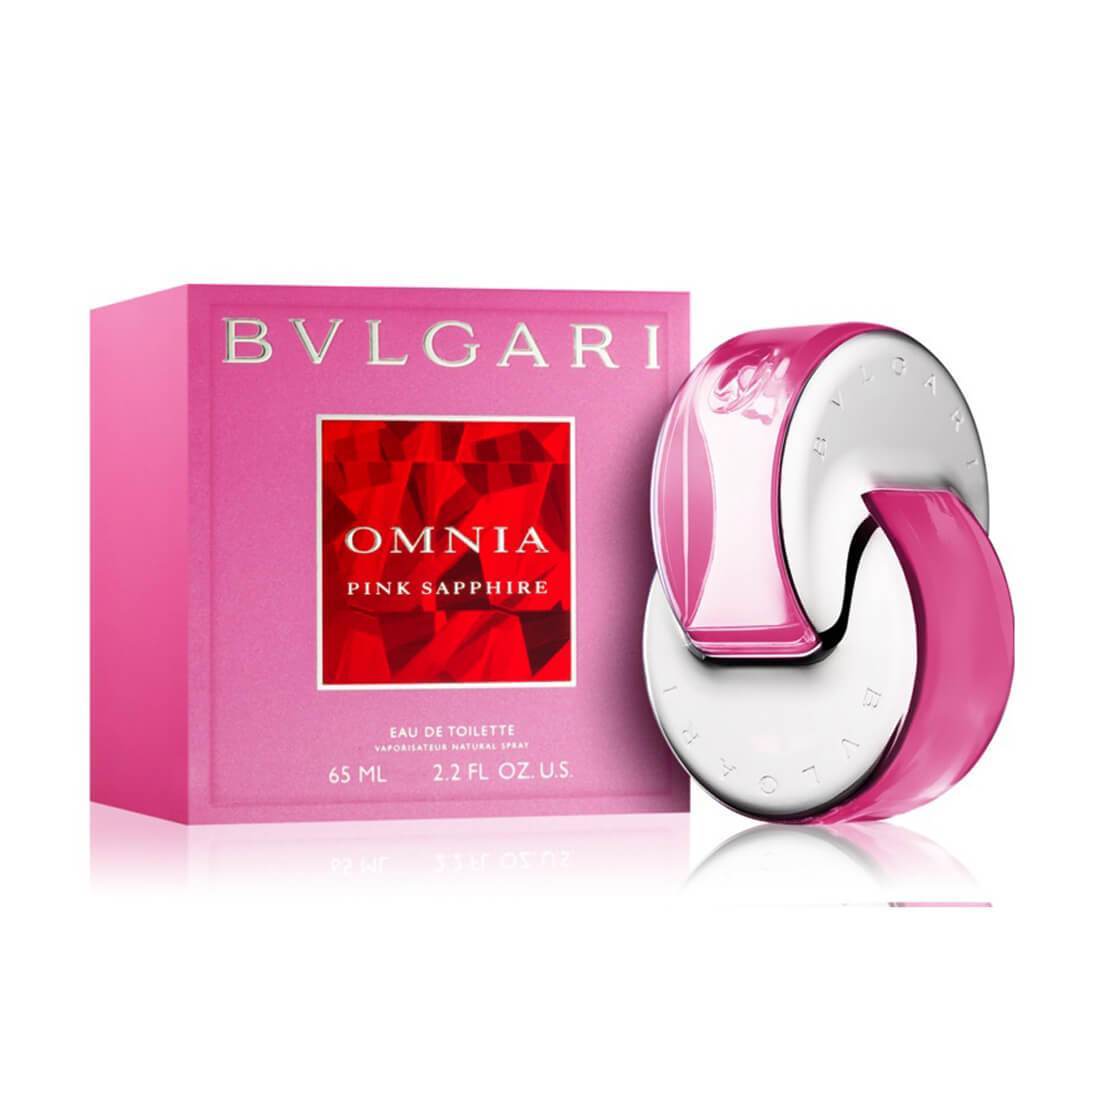 bvlgari omnia pink sapphire perfume